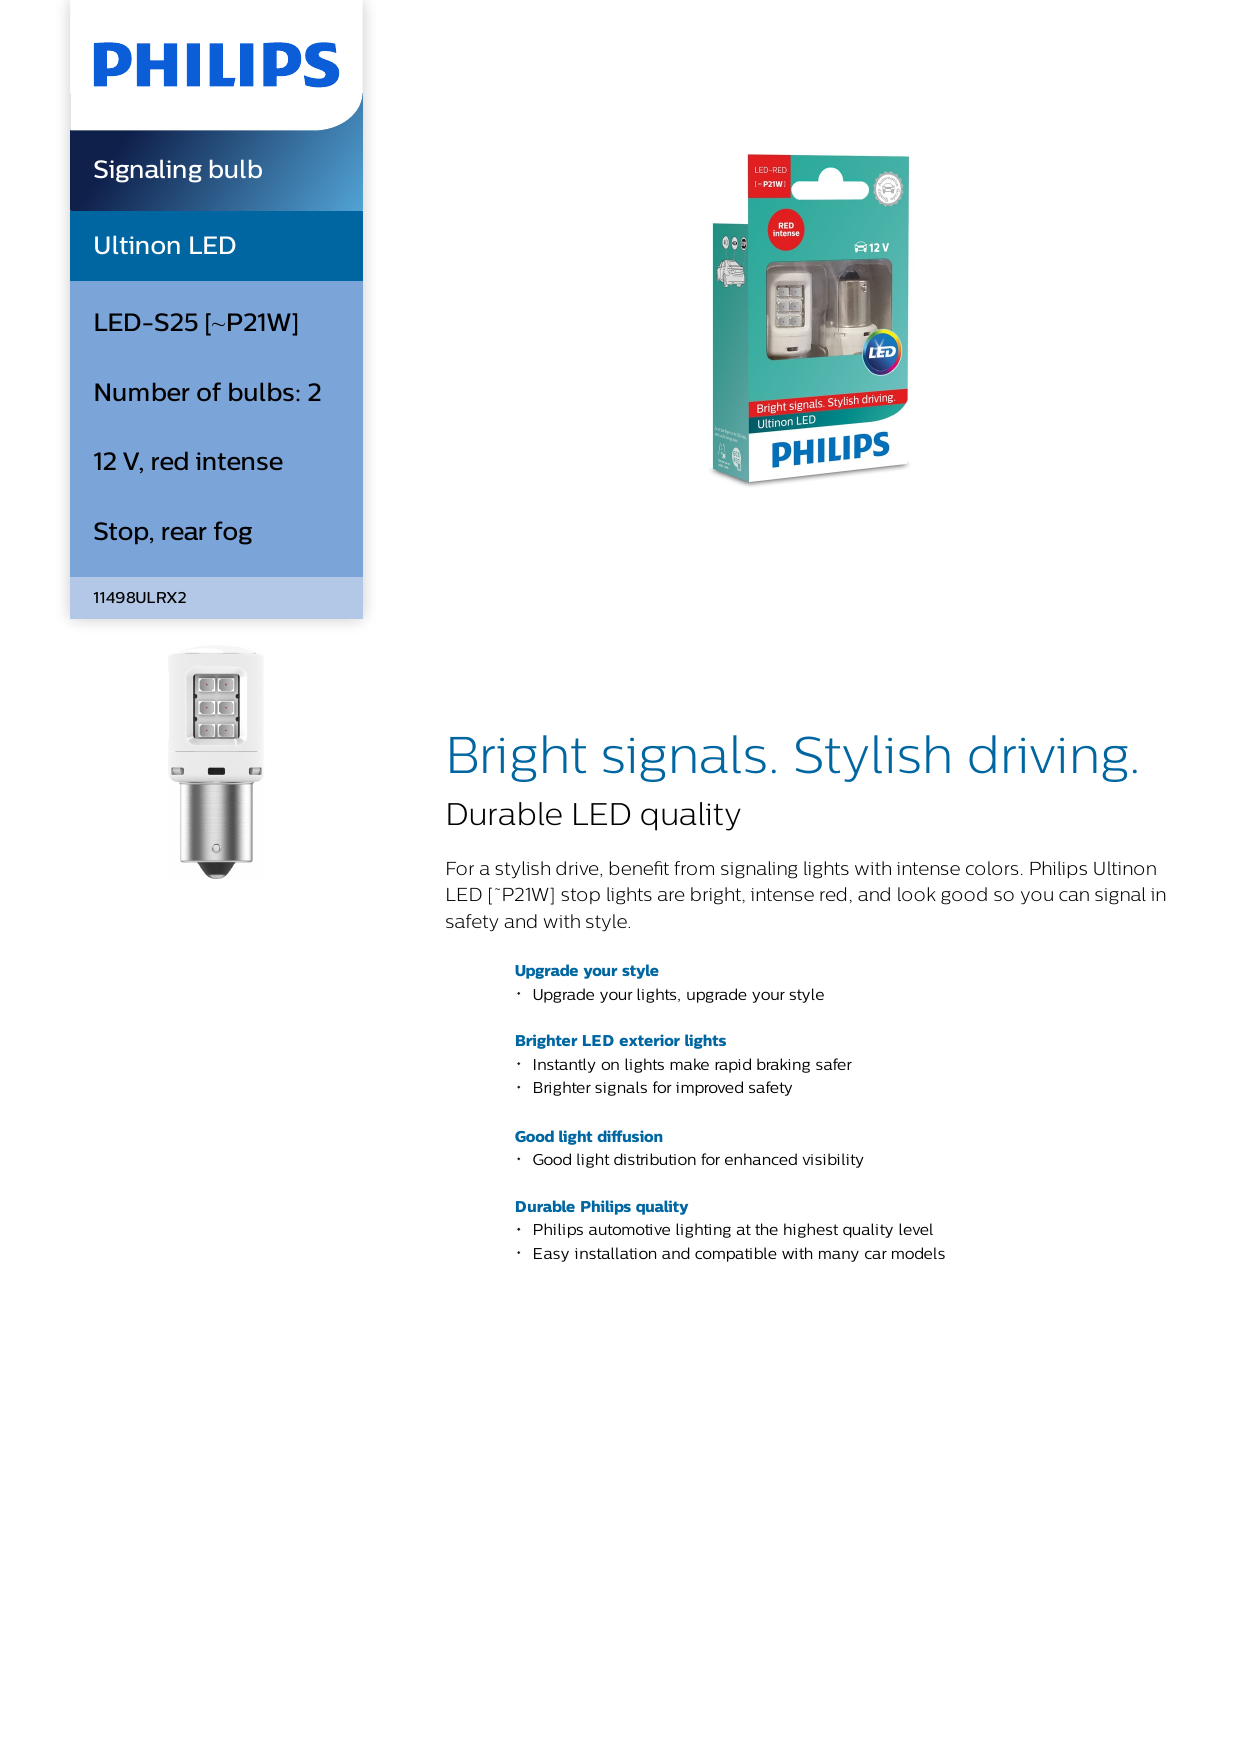 Philips 11498ULRX2 Ultinon LED Signaling bulb Product Datasheet